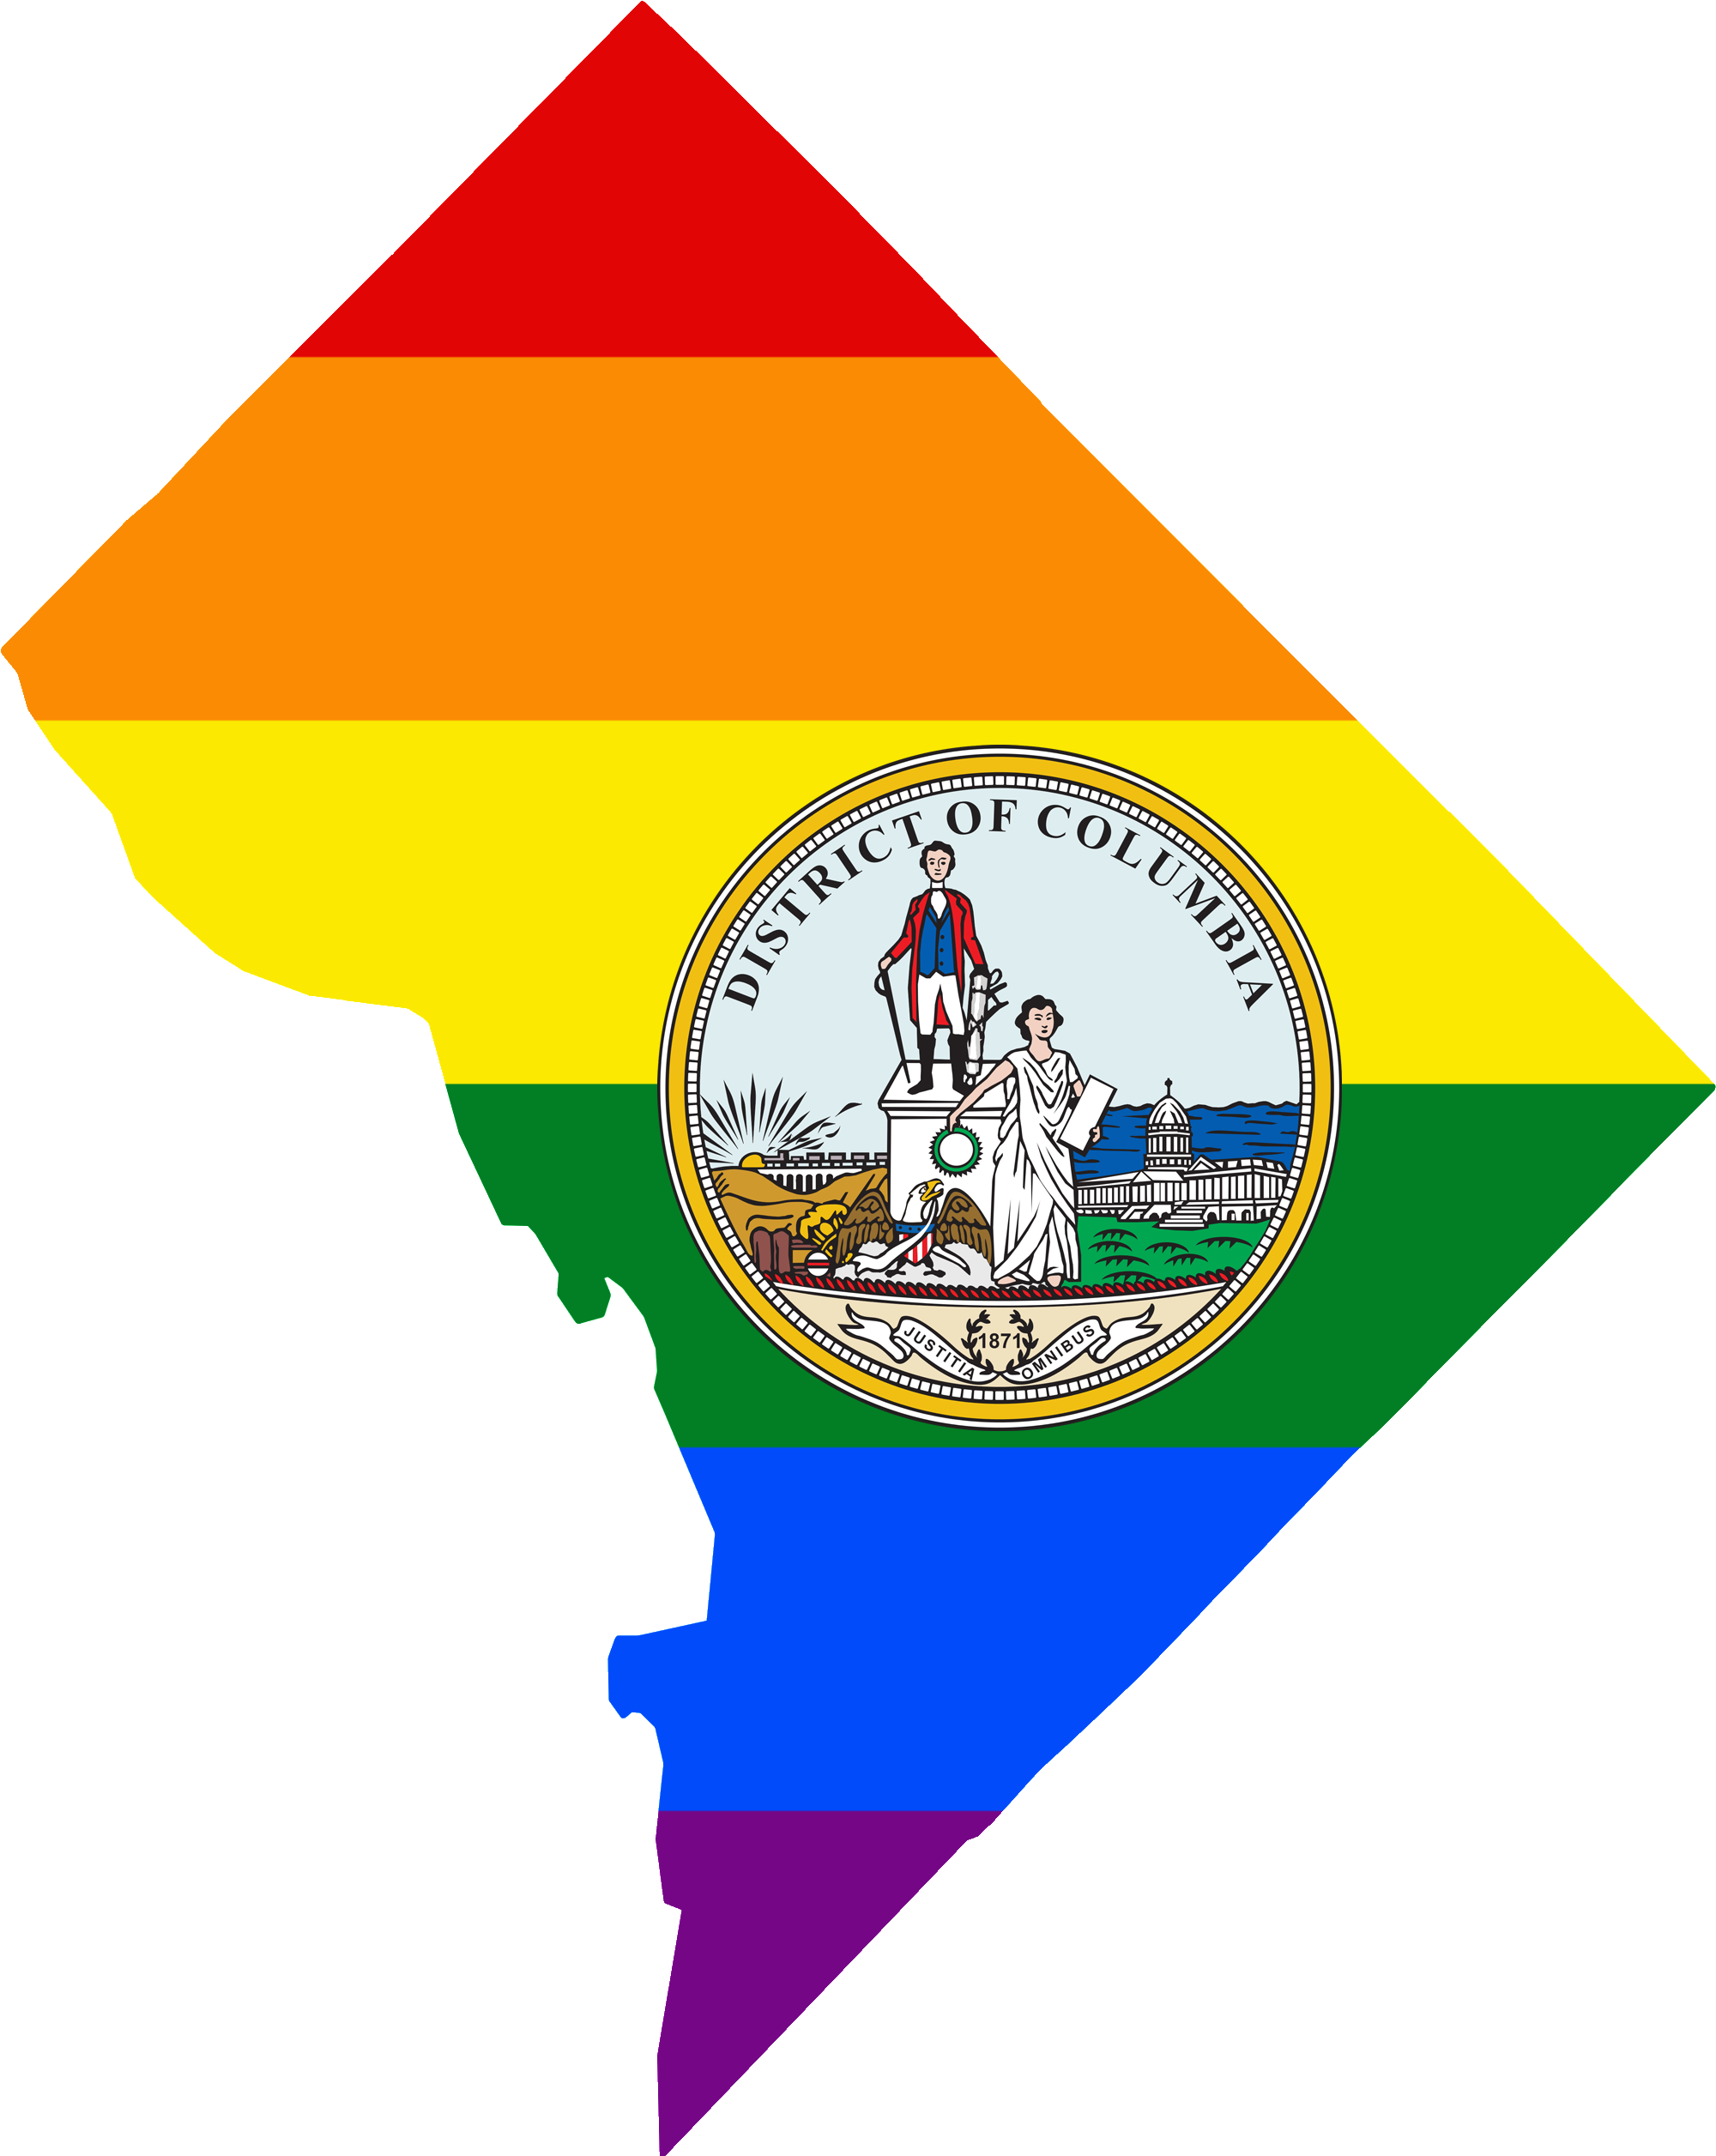 Washington DC LGBTQ